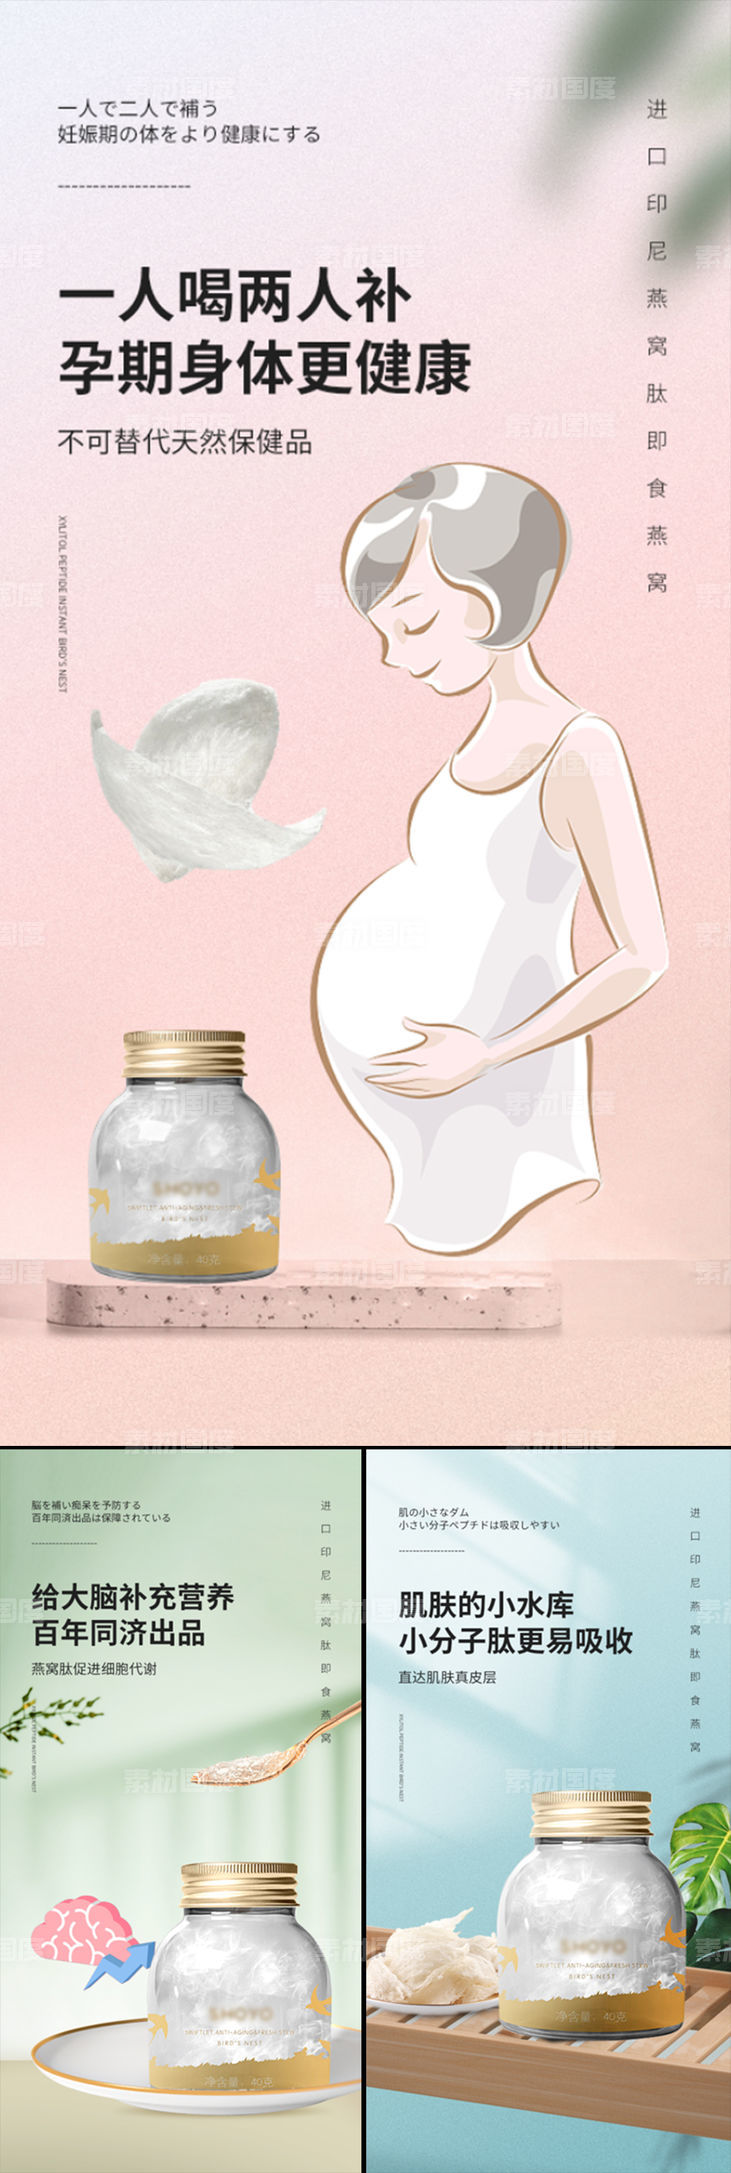 即食燕窝孕妇保健品微商圈图海报